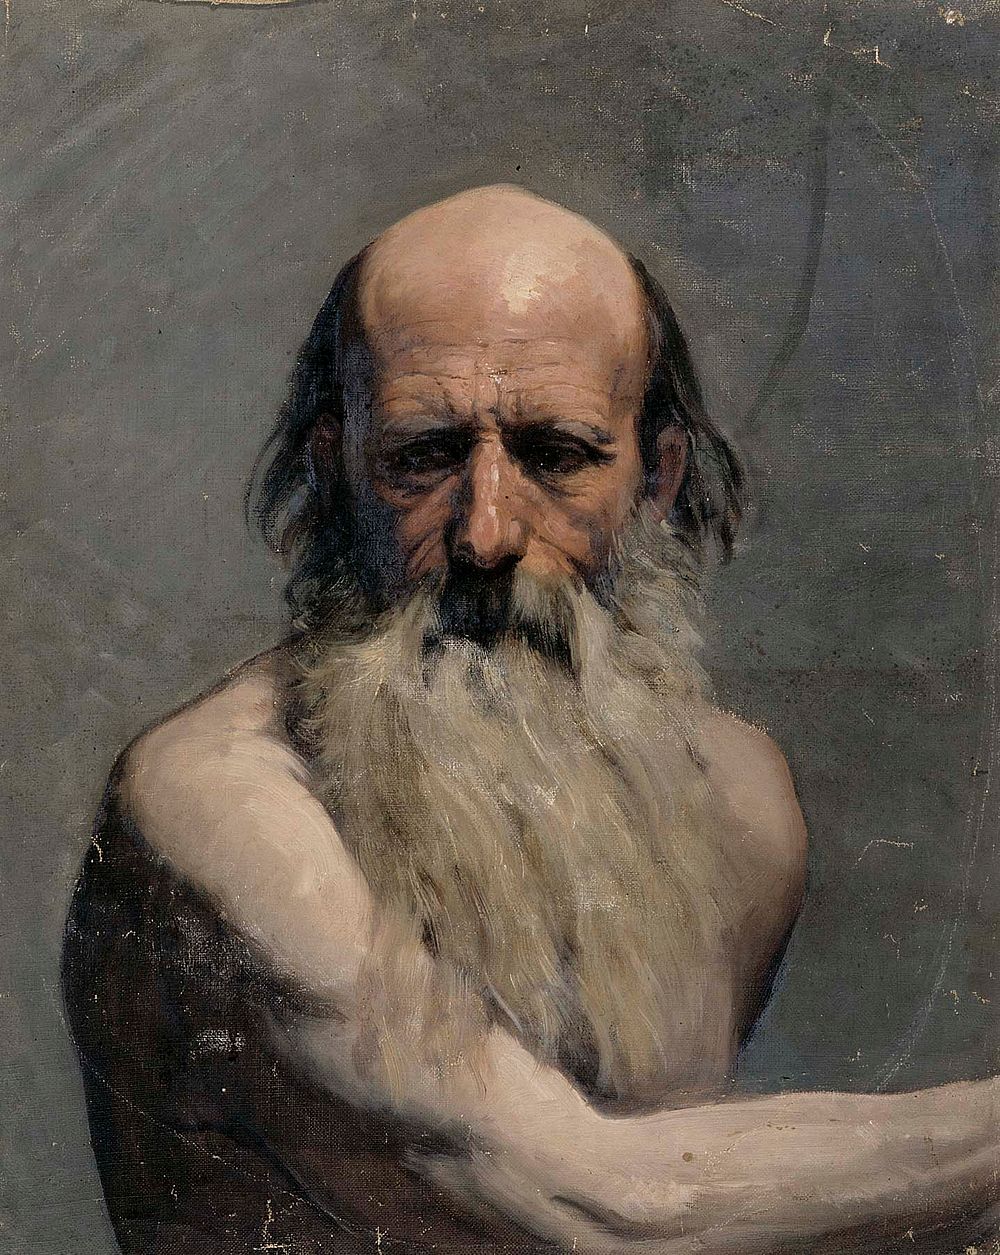 Vanhan miehen puolivartalokuva (akatemiaharjoitelma), 1863, by Adolf von Becker